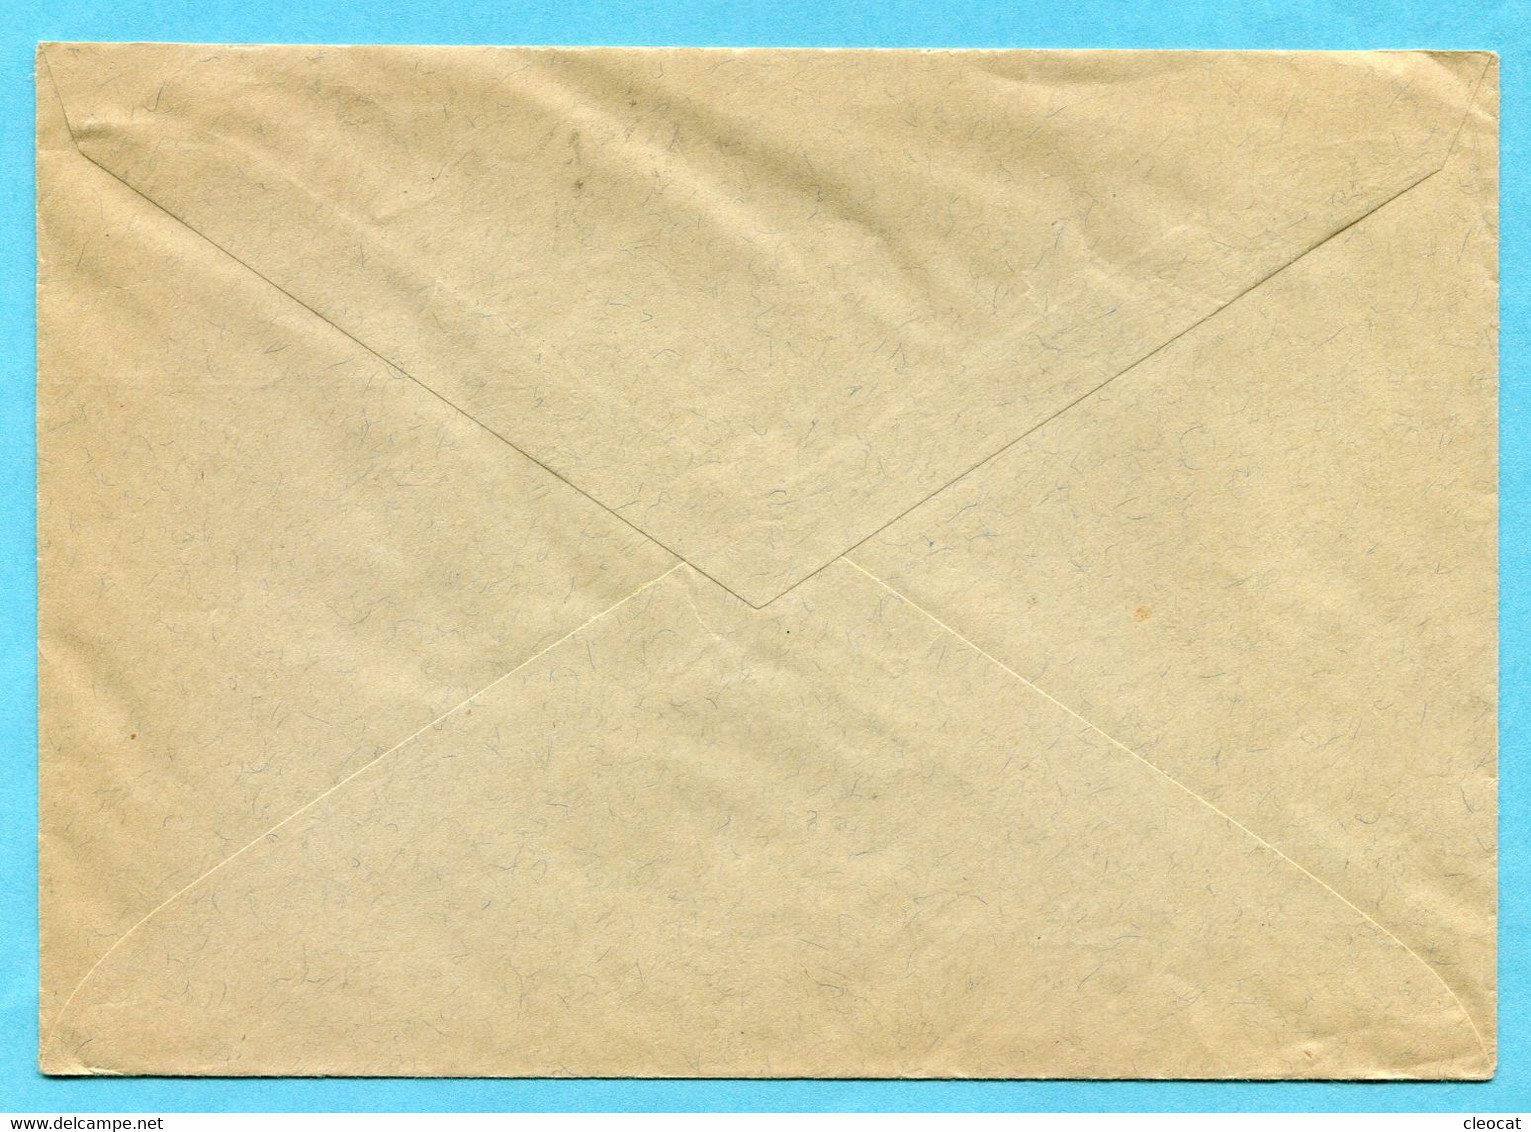 Brief Saas-Almagel 1939 - P.P. - Absender: Eine Arme Berggemeinde Bittet... - Cartas & Documentos